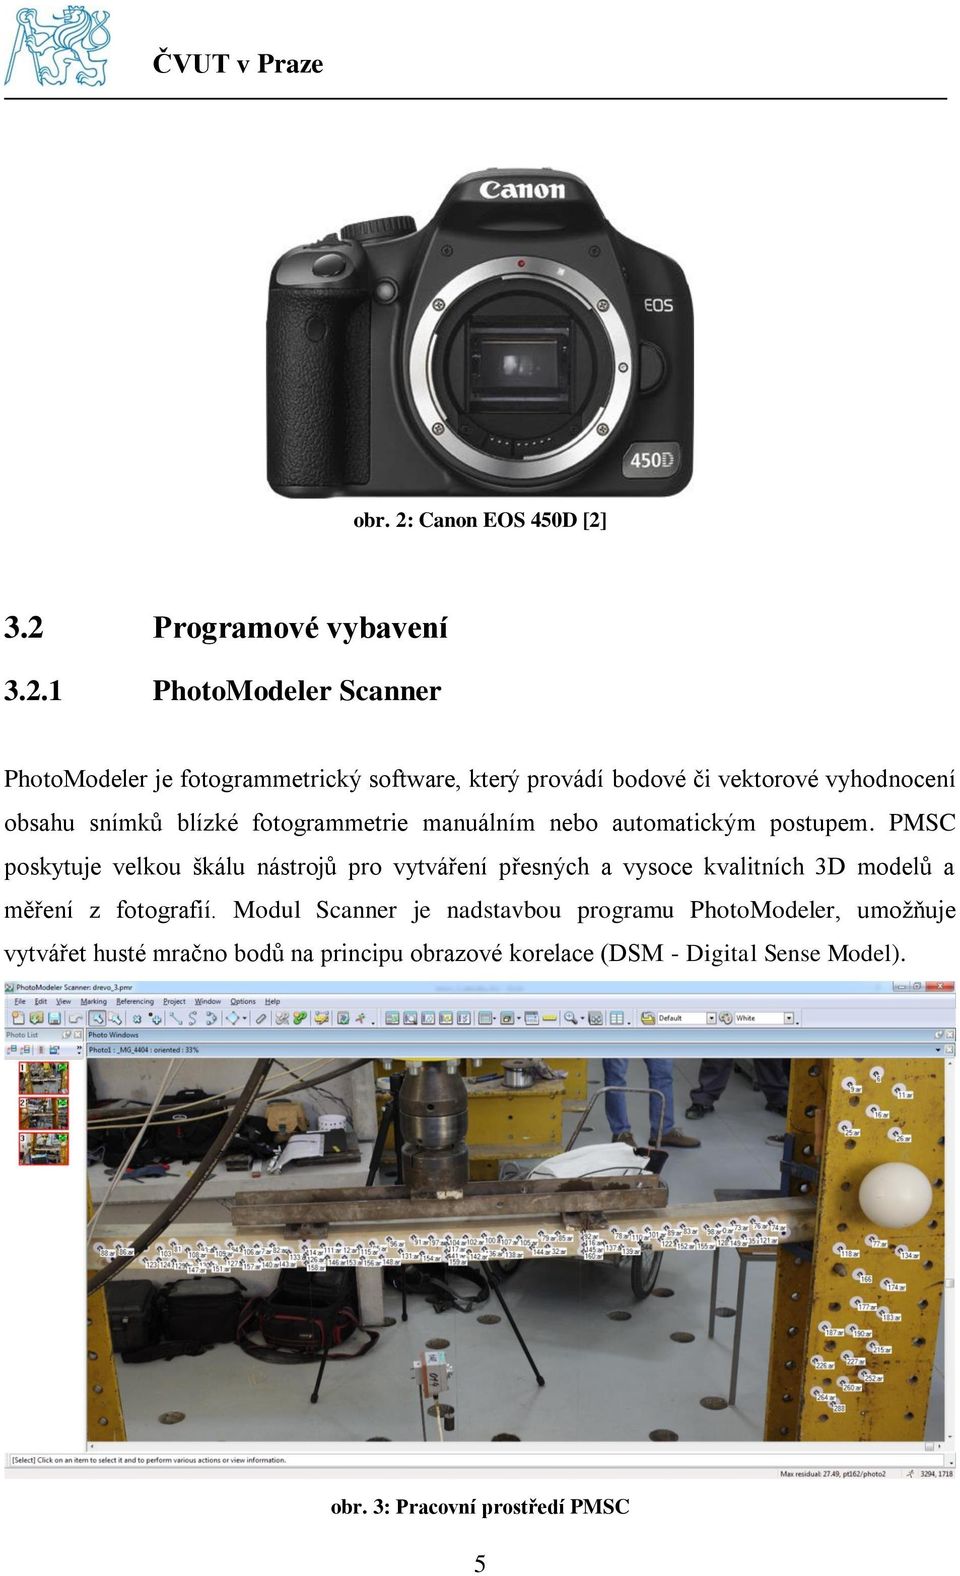 3.2 Programové vybavení 3.2.1 PhotoModeler Scanner PhotoModeler je fotogrammetrický software, který provádí bodové či vektorové